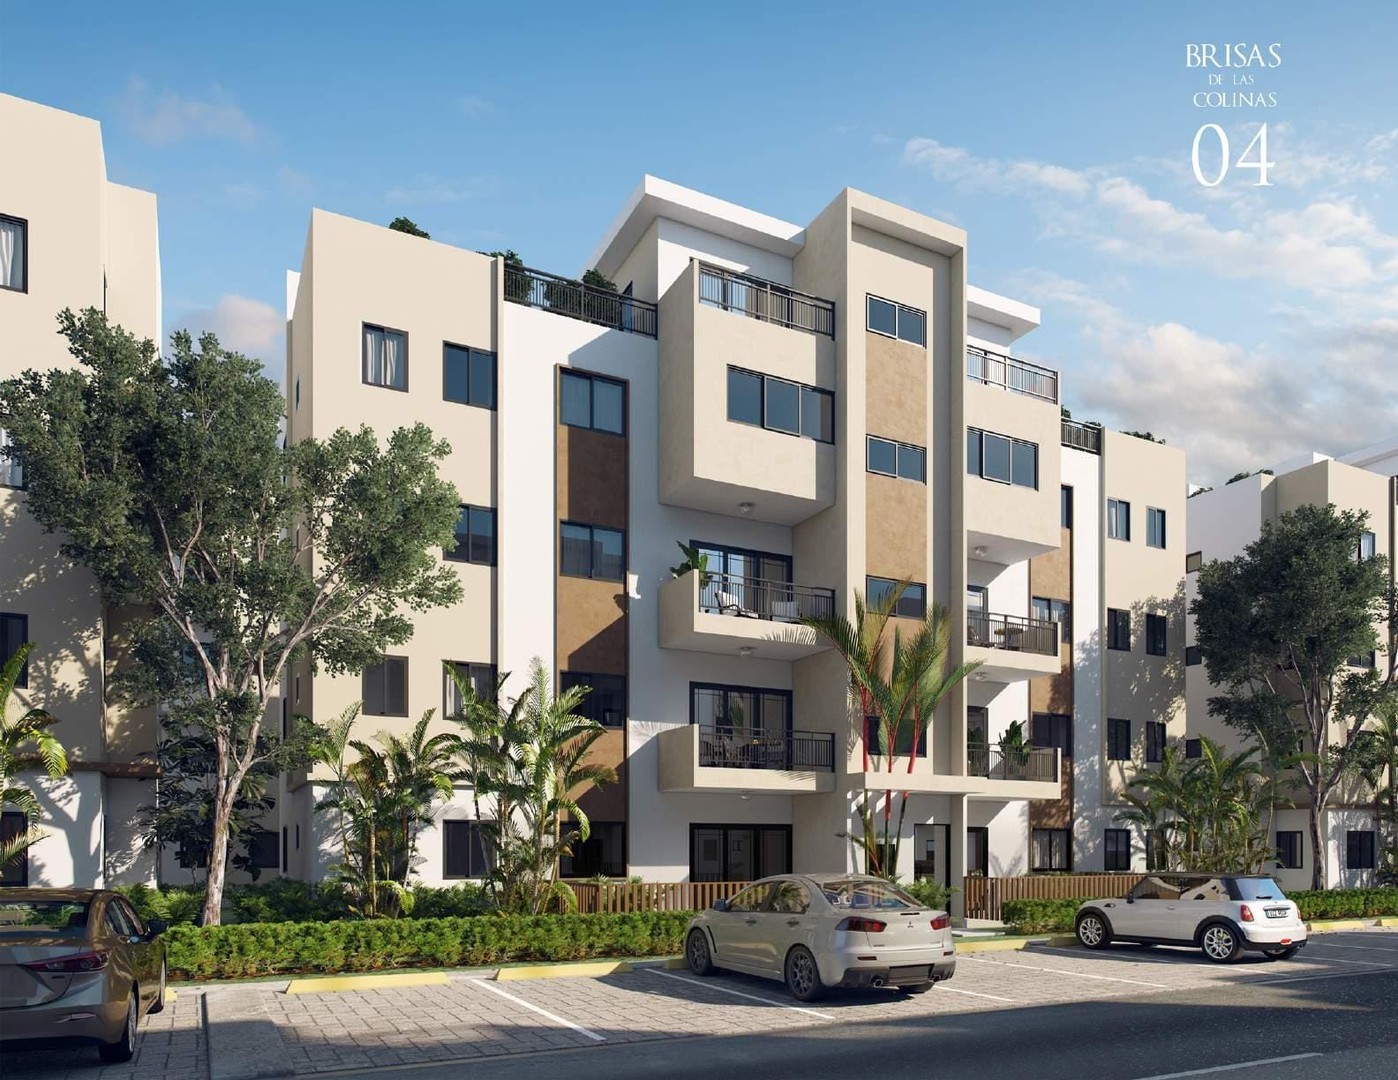 apartamentos - Gran proyecto de oportunidad al mejor precio del mercado en SAnto Domingo oeste